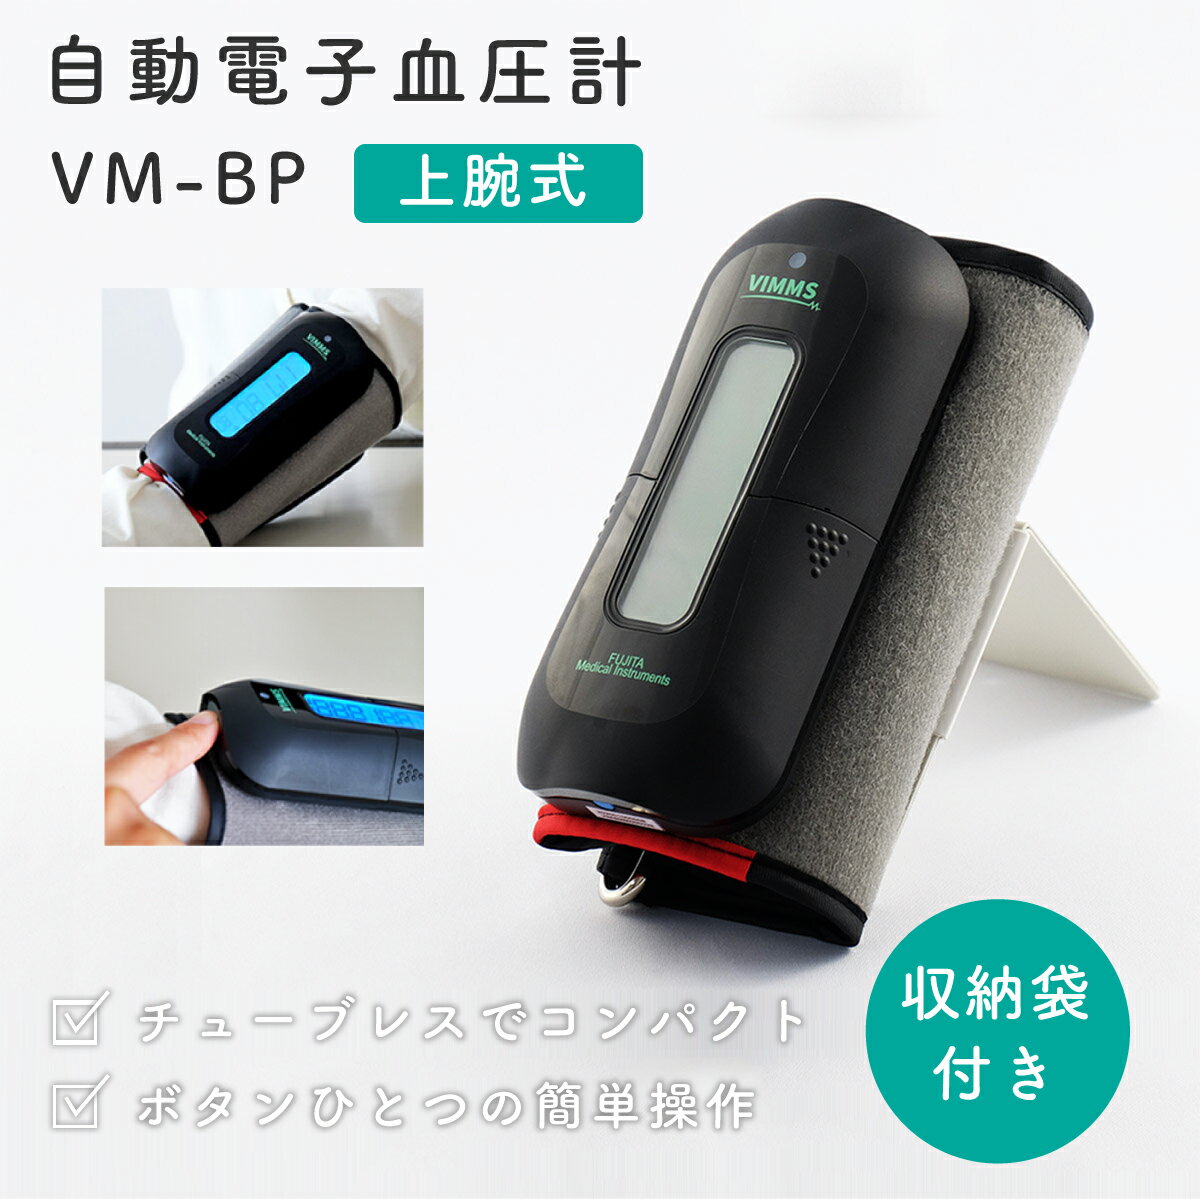 自動電子血圧計 VM-BP[医療機器認証取得] チューブレス コンパクト 健康維持 旅行 レジャー 敬老の日 贈答 測定時間 早い